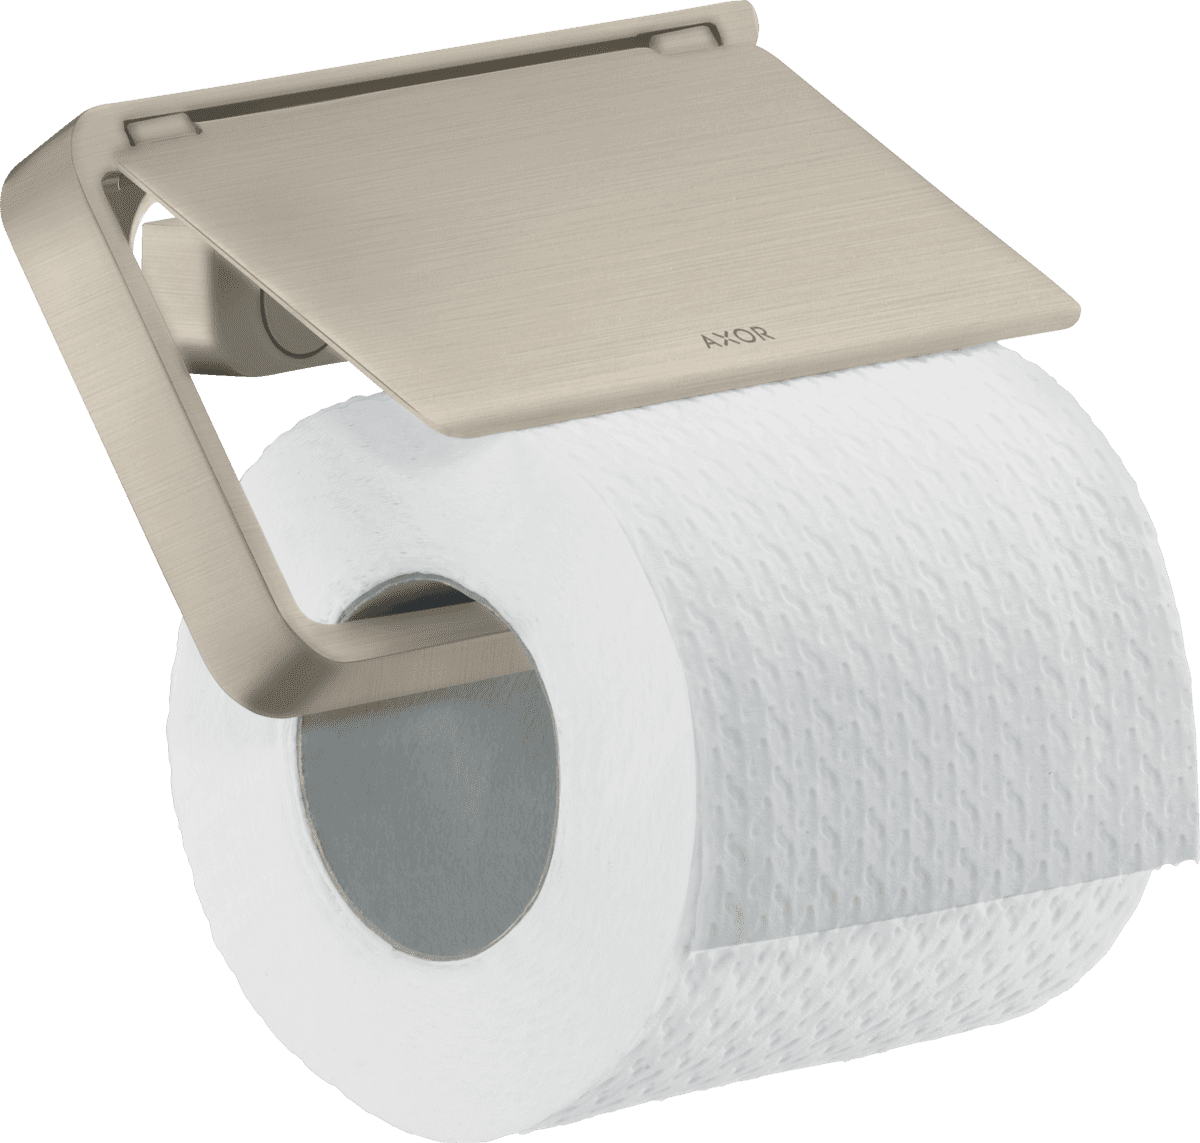 εικόνα του HANSGROHE AXOR Universal Softsquare Toilet paper holder with cover #42836820 - Brushed Nickel